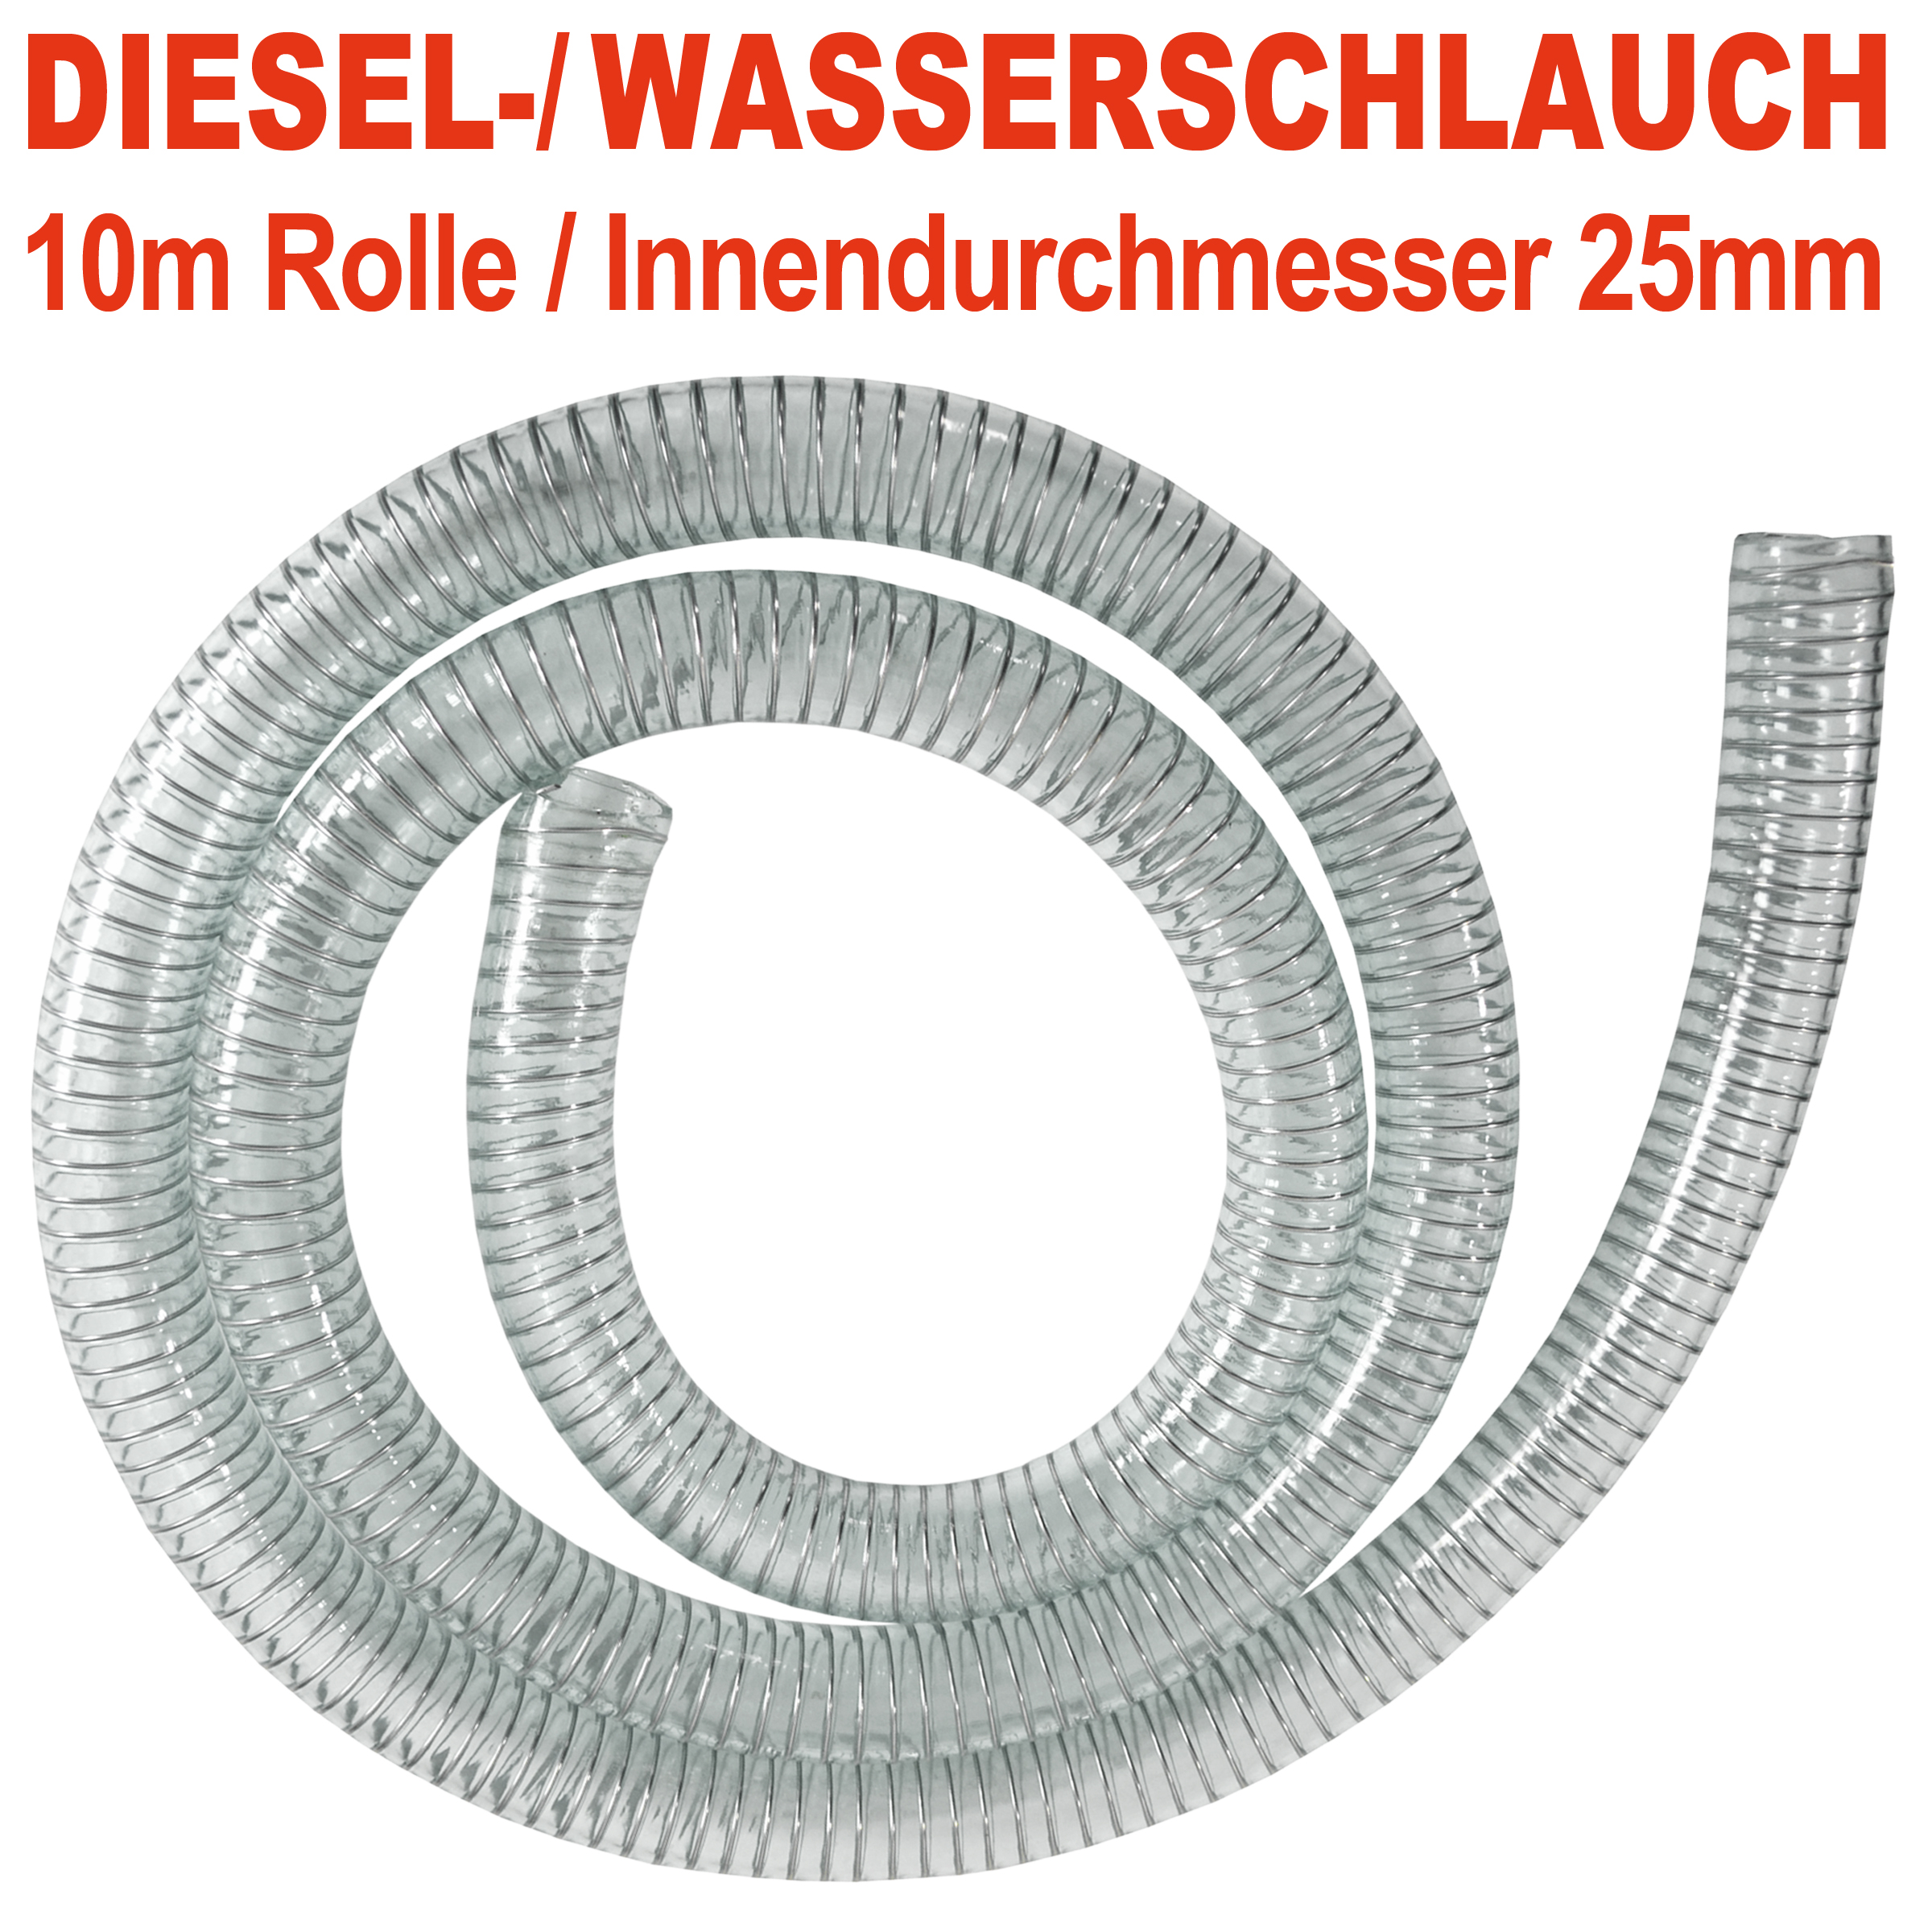 PVC Diesel-Spiral-Schlauch 1, Länge 10m